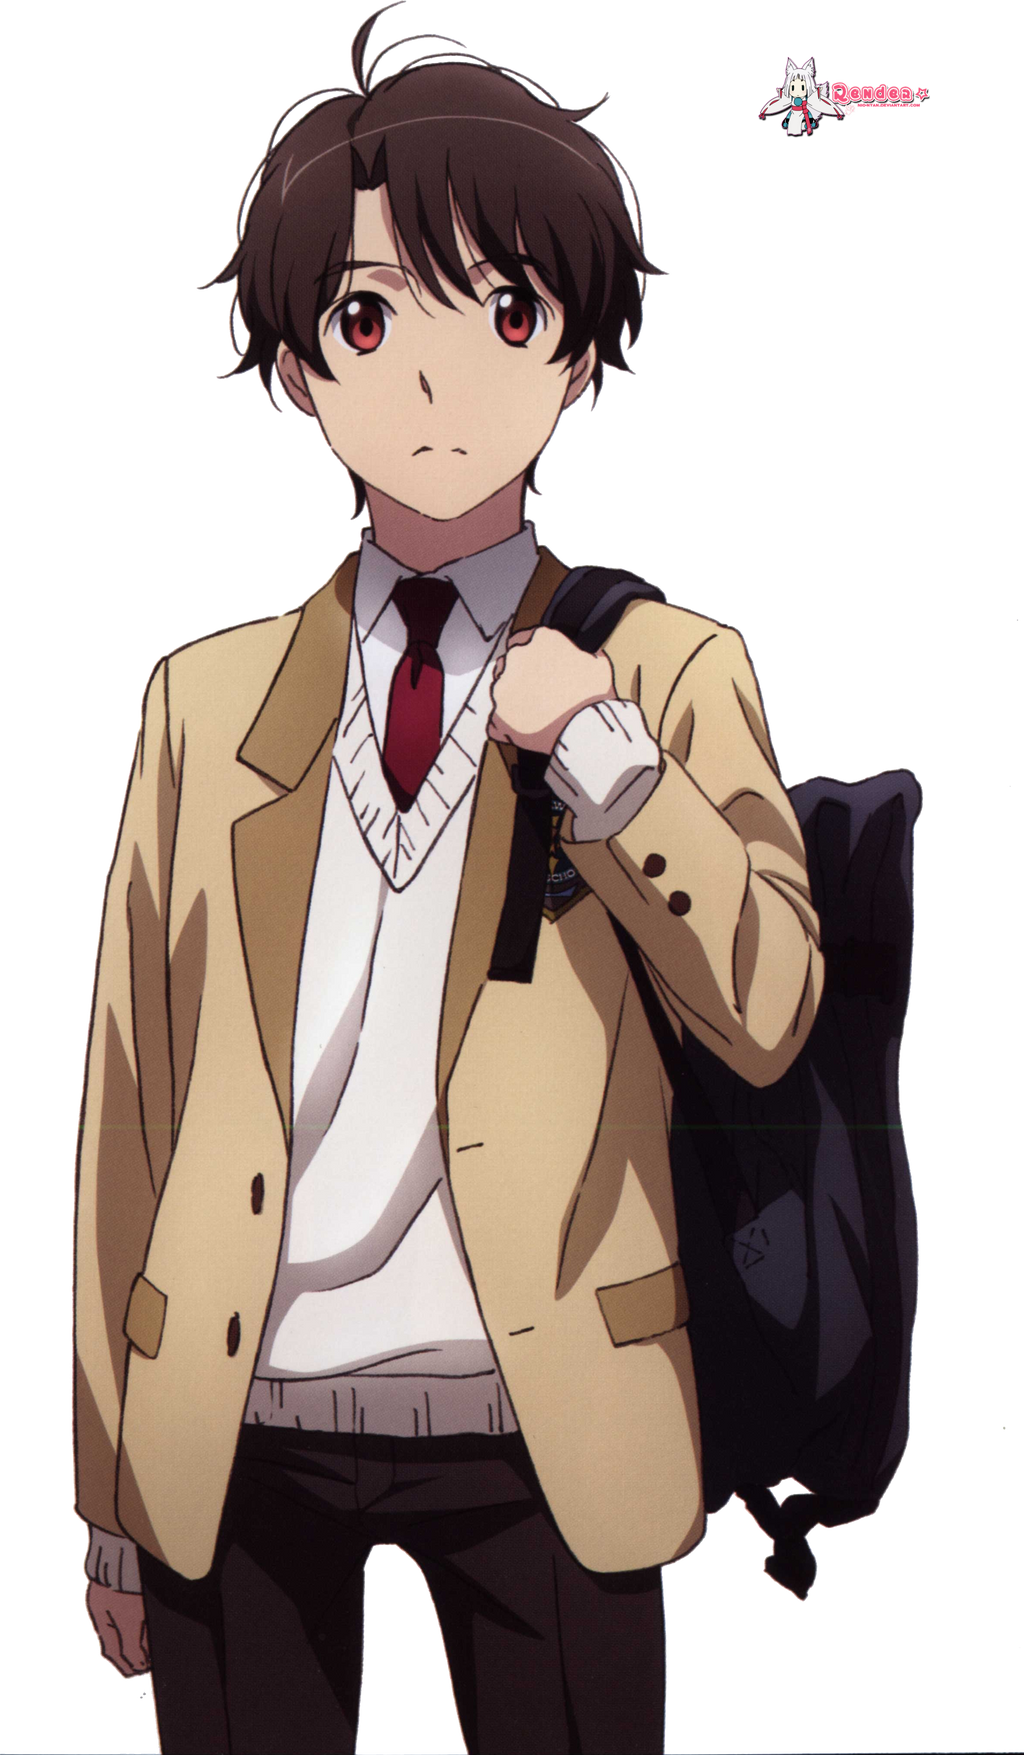 Inaho Kaizuka - Aldnoah Zero - Anime Characters Database  Character design  inspiration, Anime characters, Character design references